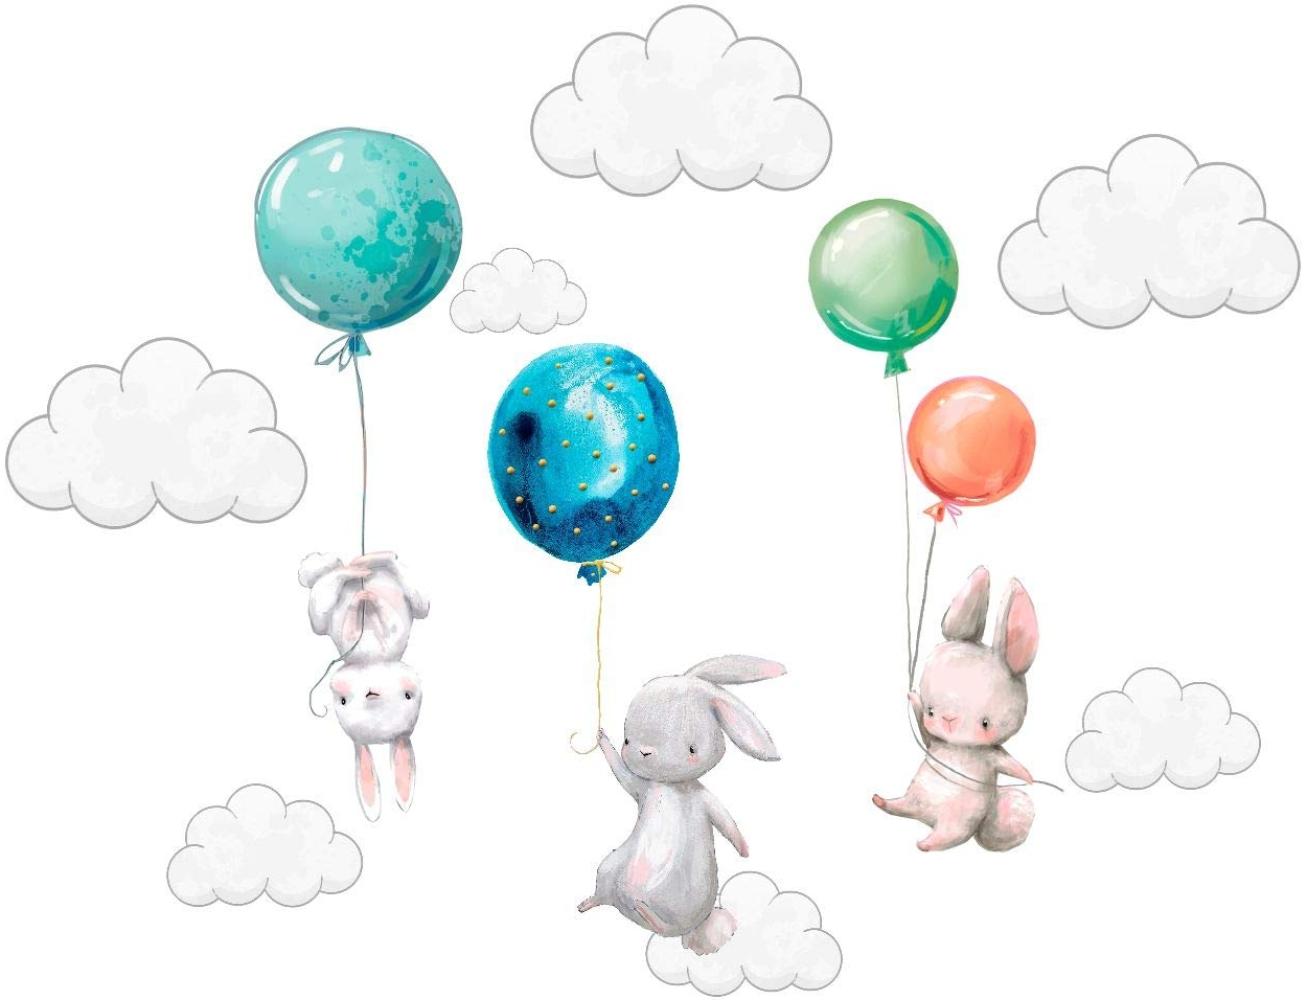 Szeridan Kaninchen Hase Ballons Wolken Wandtattoo Babyzimmer Wandsticker Wandaufkleber Aufkleber Deko für Kinderzimmer Baby Kinder Kinderzimmer Mädchen Junge Dekoration 135 x 160 cm (XXL, Mehrfarbig) Bild 1